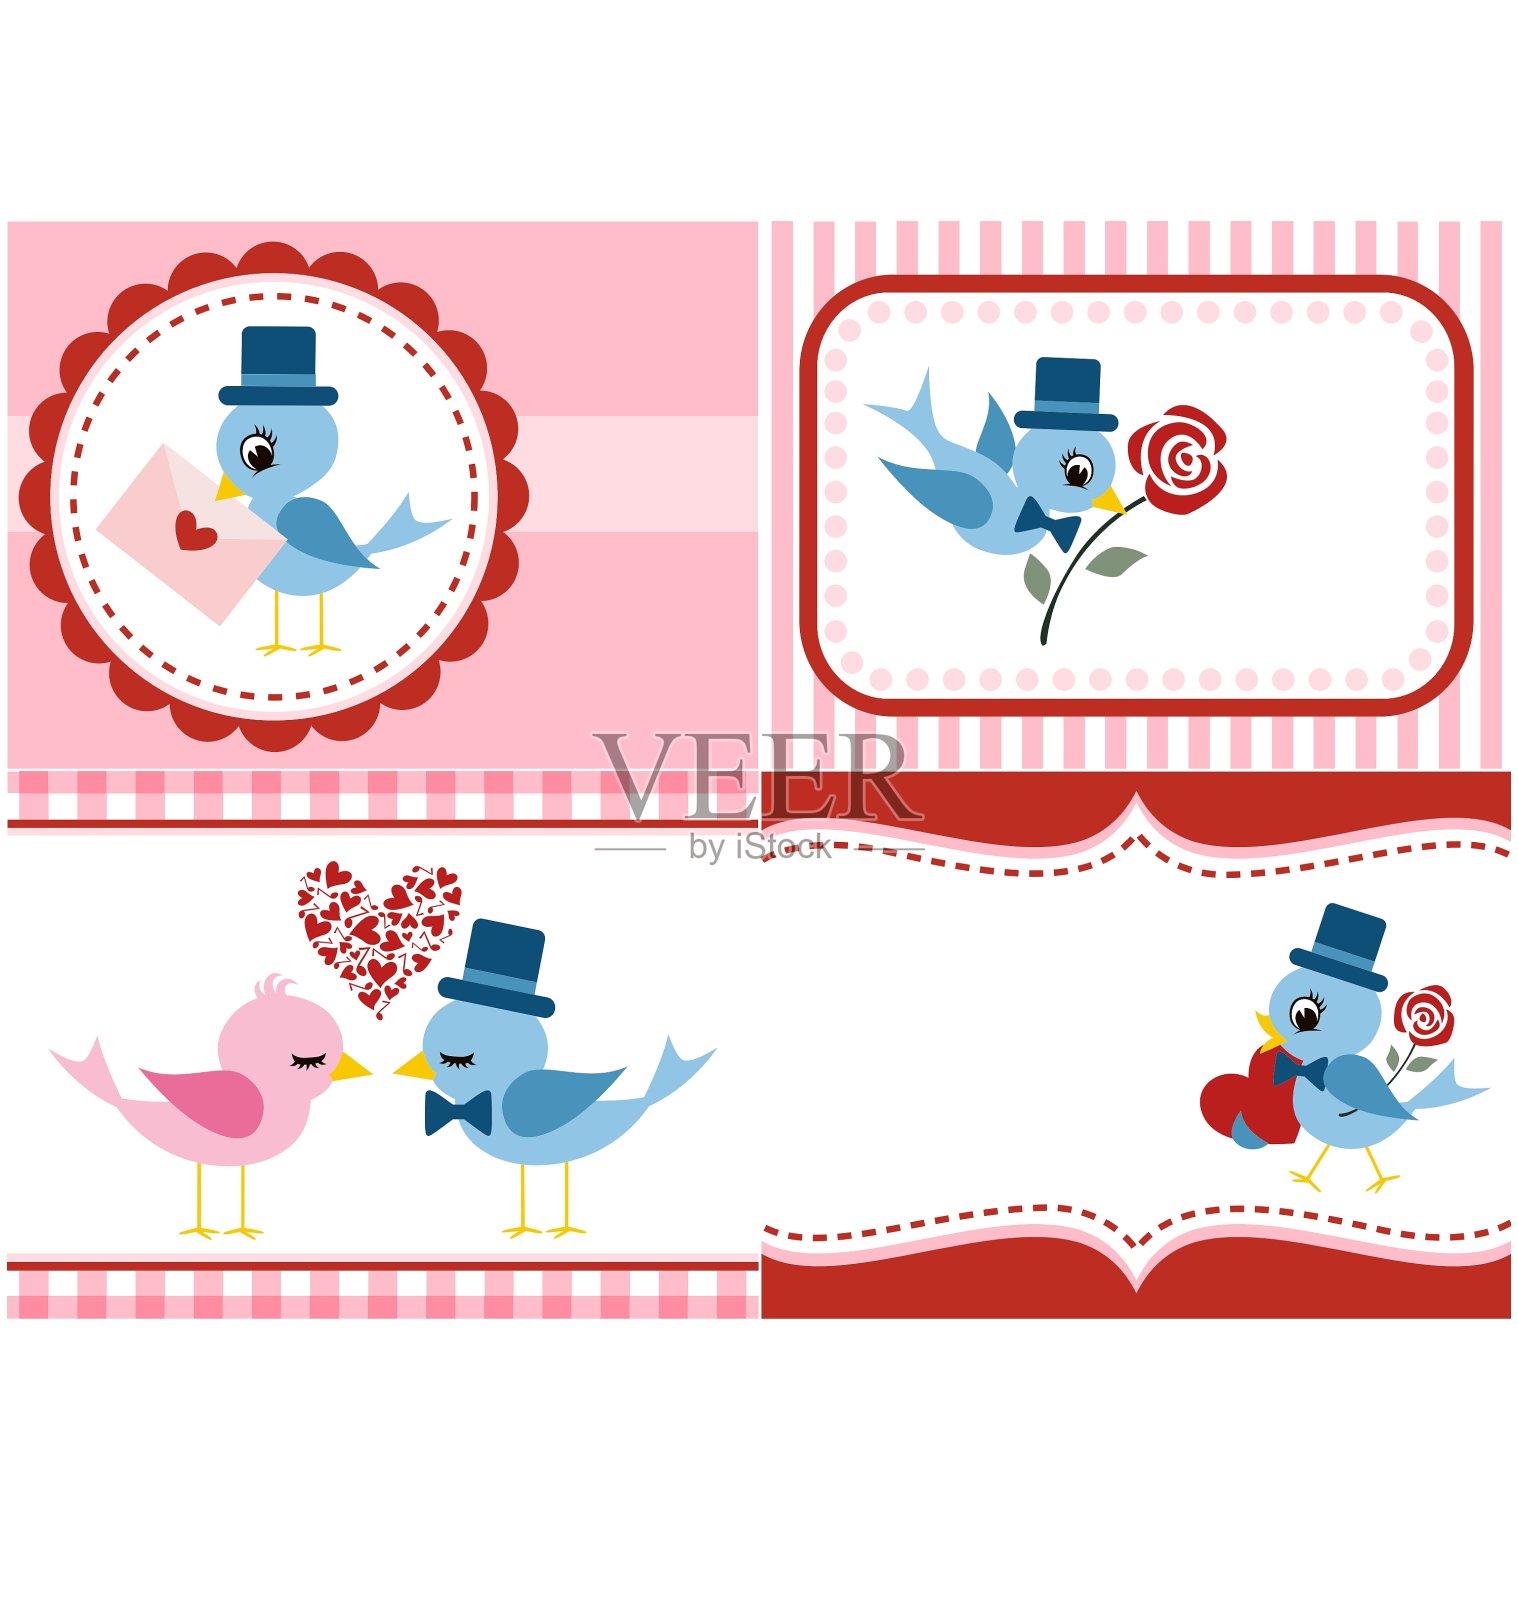 送给情人节的鸟和玫瑰花束插画图片素材